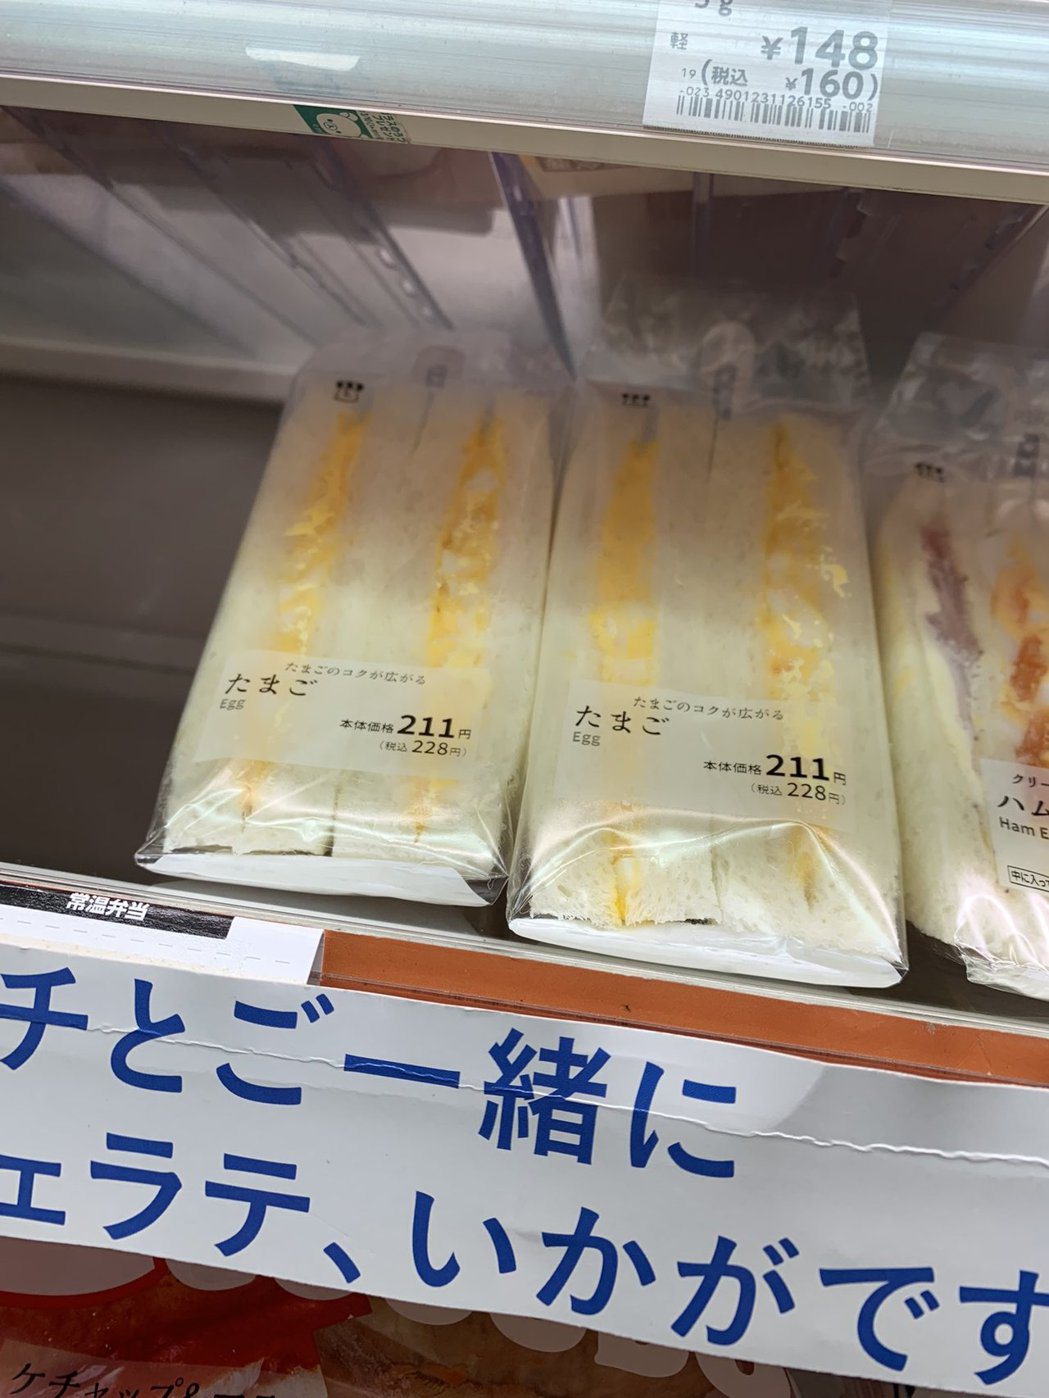 日本三明治「難以言喻的美味」 新加坡記者愛上這款超商冰品